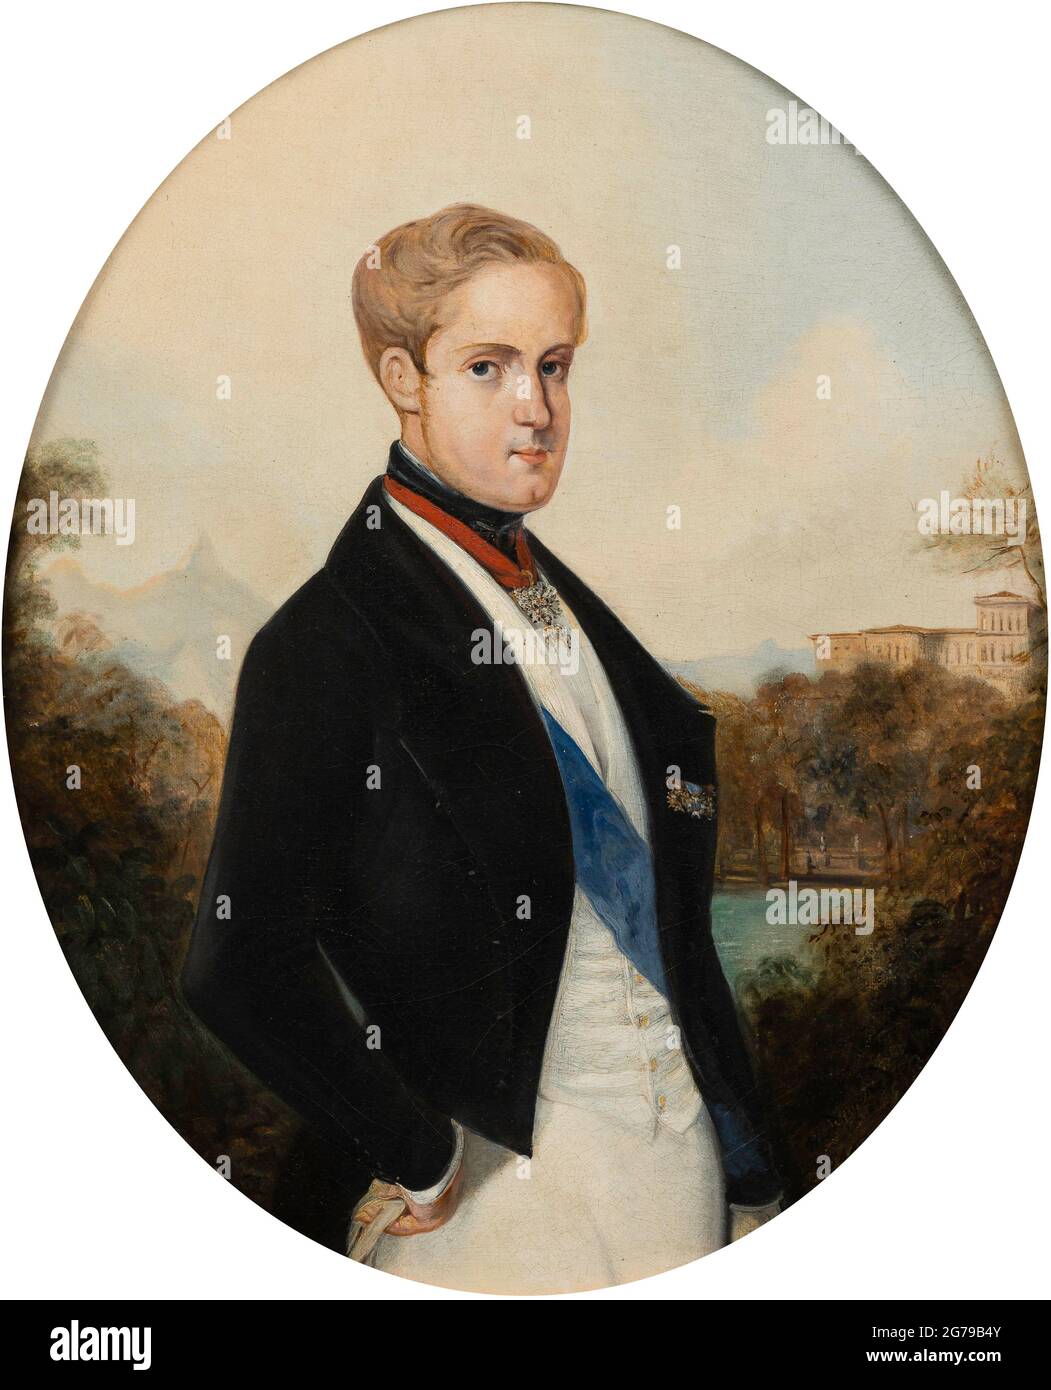 Retrato del emperador Pedro II de Brasil (1825-1891). Museo: Instituto Cultural Itaú. AUTOR: JOHANN MORITZ RUGENDAS. Foto de stock